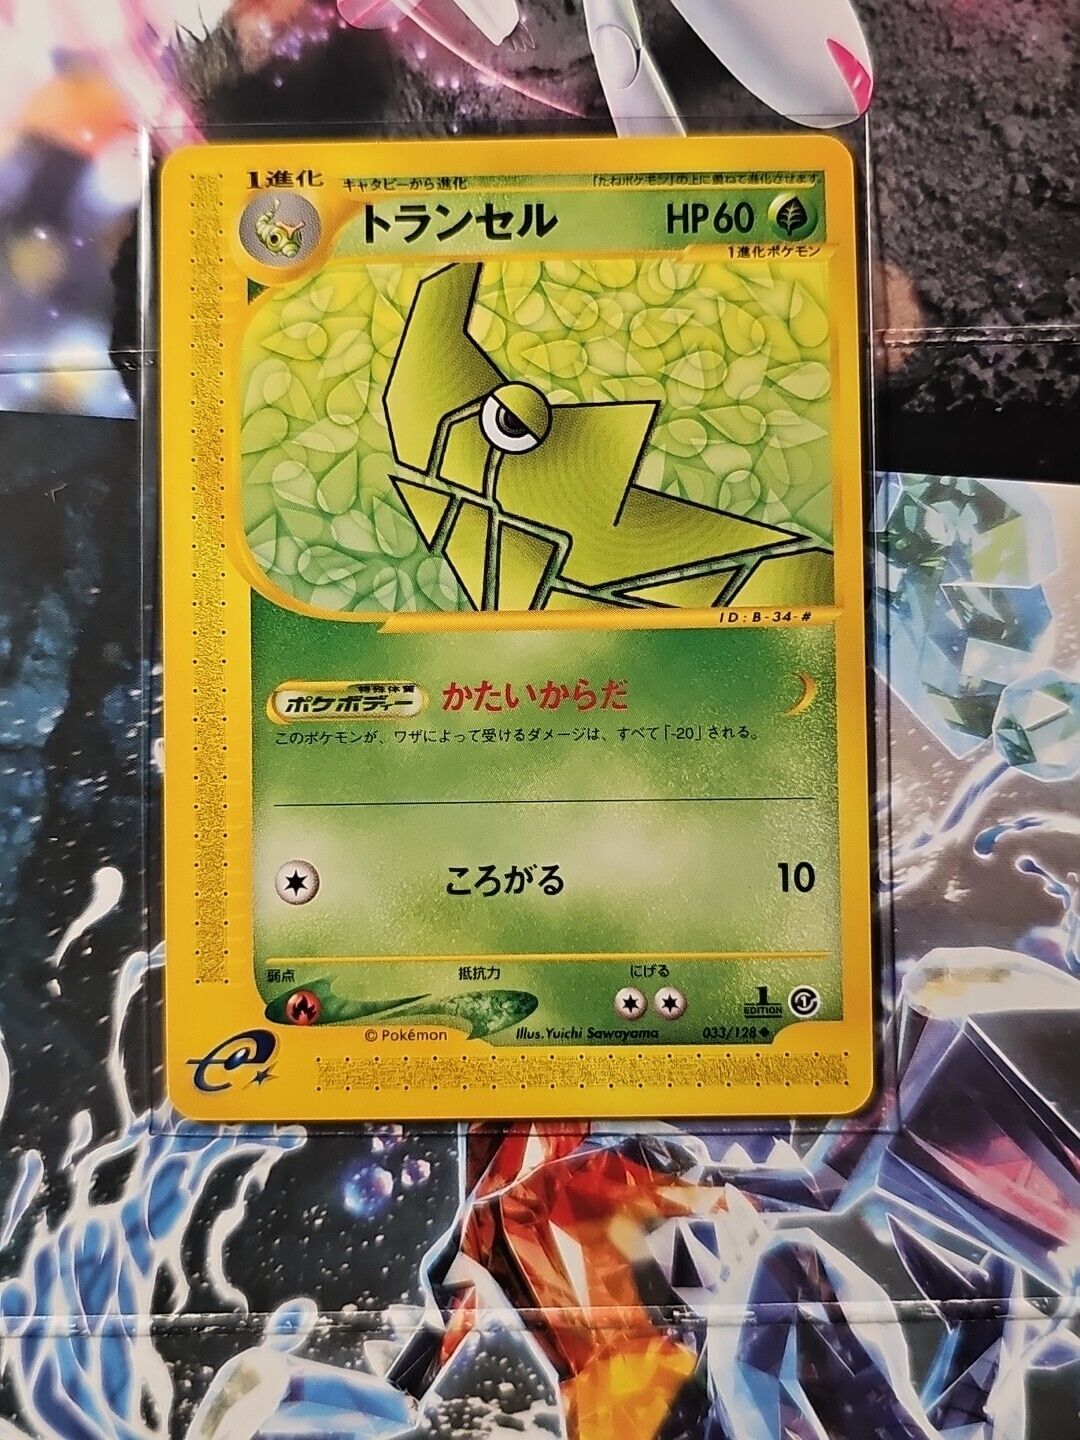 【LP】Metapod 033/128 e Series Starter Pack e1 2001 Pokemon Card Japanese